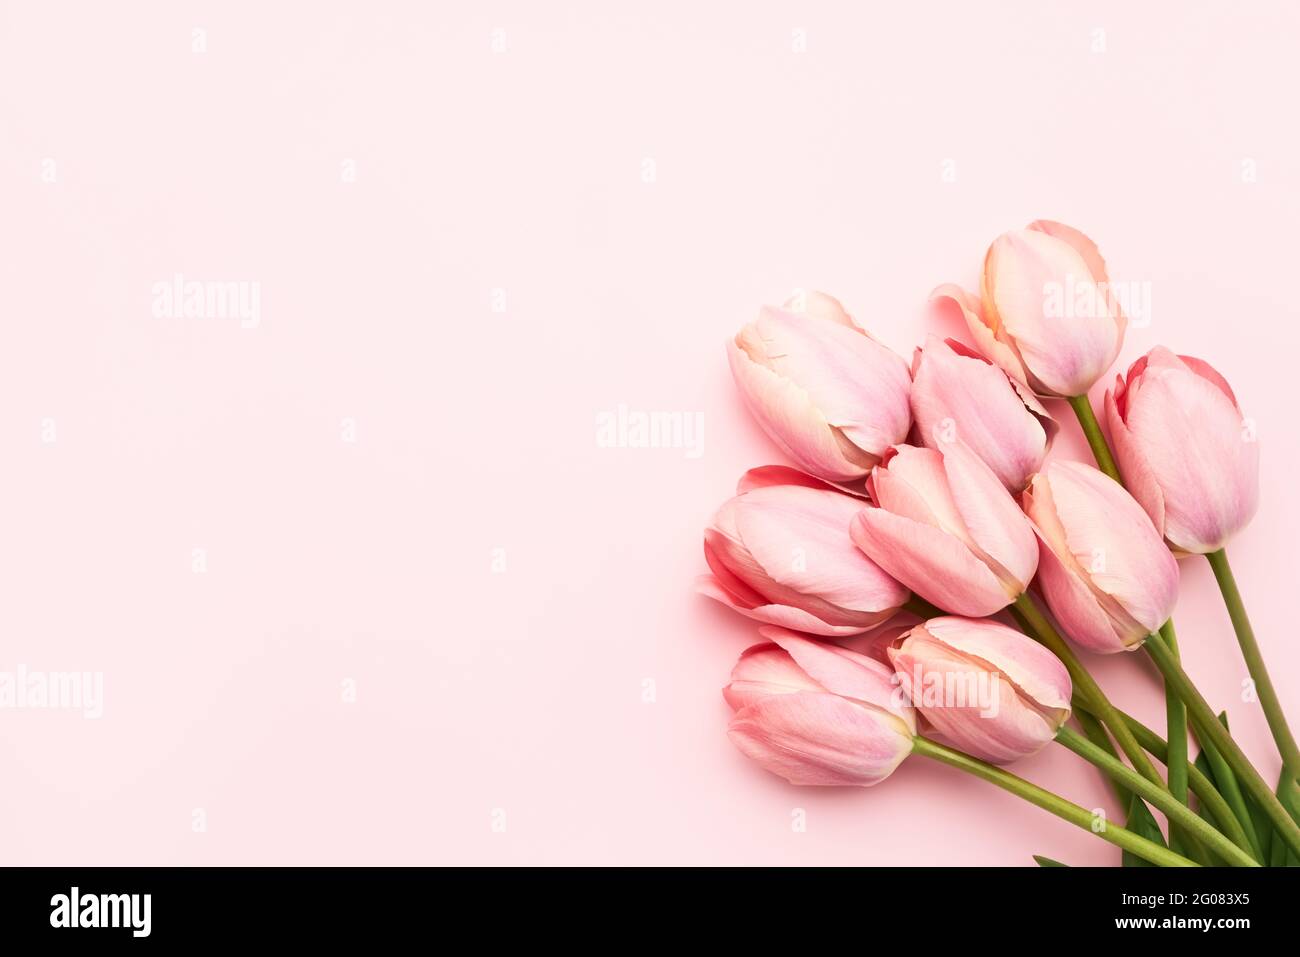 Rosa Tulpenblüten auf einem rosa Hintergrund, selektiver Fokus. Muttertag, Geburtstagsfeier Konzept. Flach liegend, Platz für Text kopieren Stockfoto